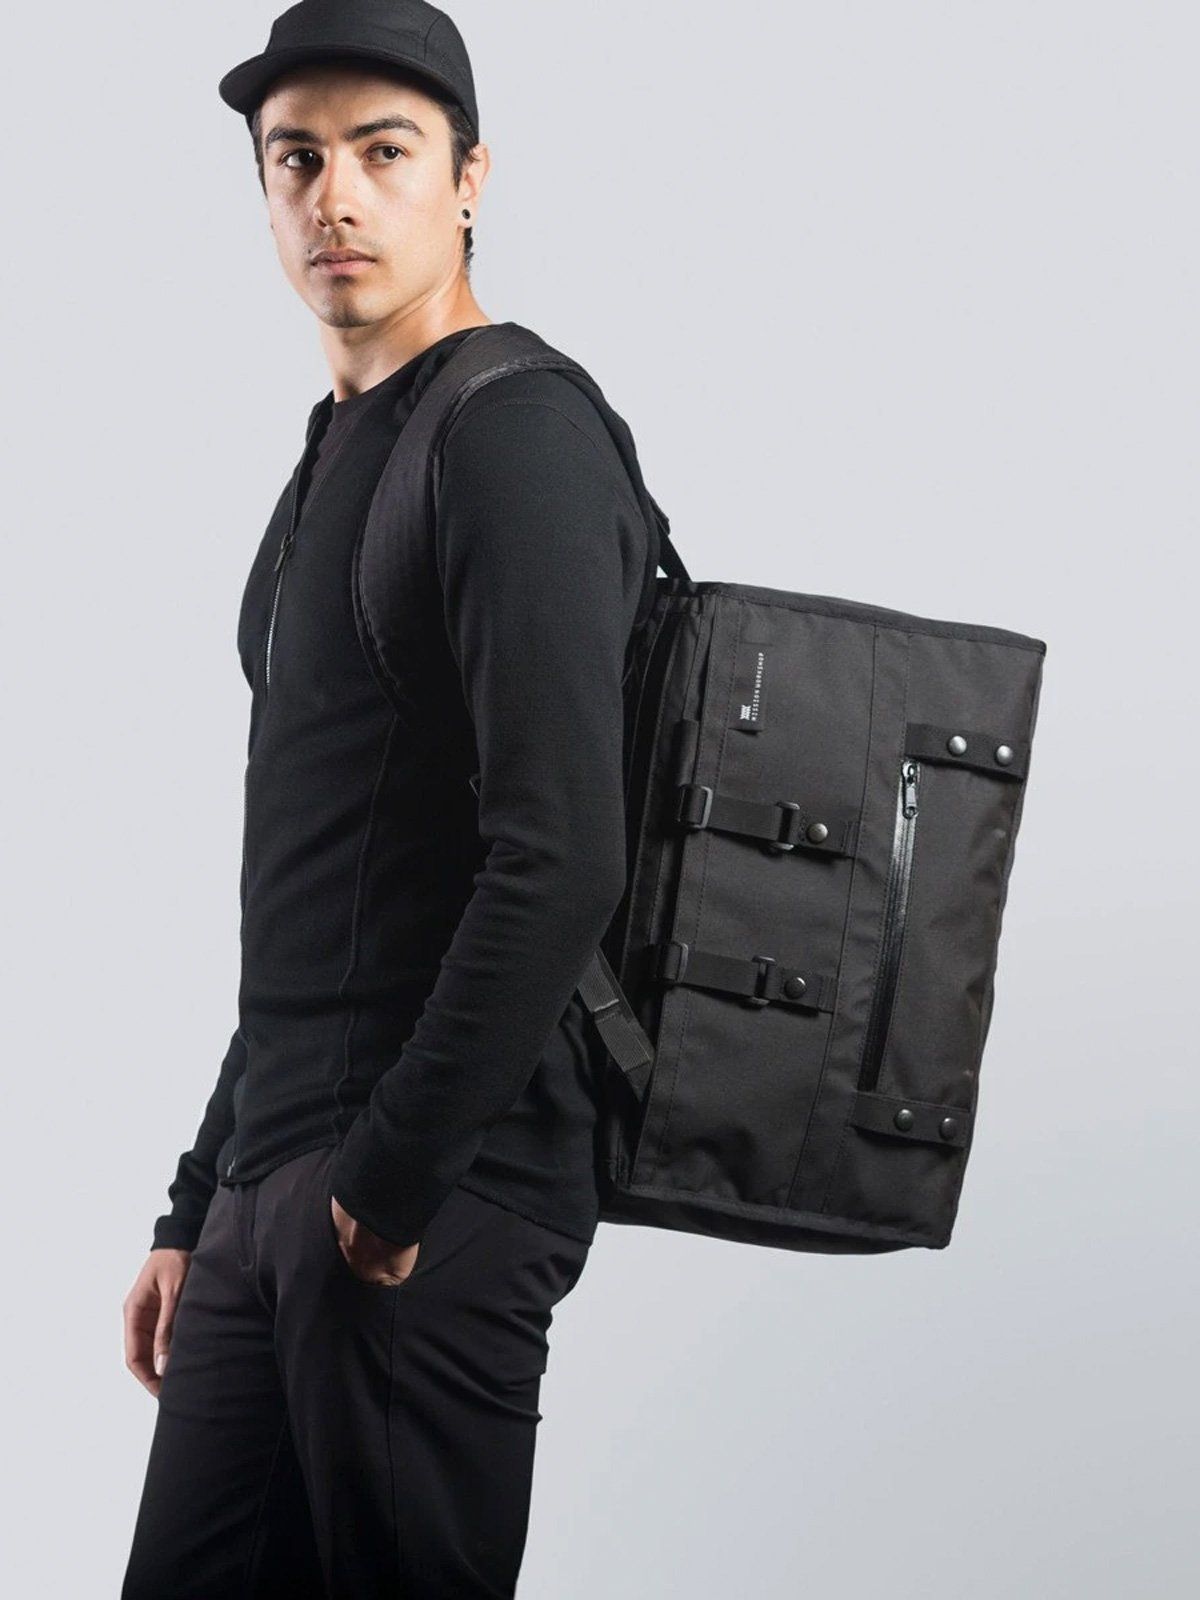 Doorvoer : Duffle Backpack Harness by Mission Workshop - Weerbestendige tassen & technische kleding - San Francisco & Los Angeles - Gebouwd om te verdragen - Voor altijd gegarandeerd